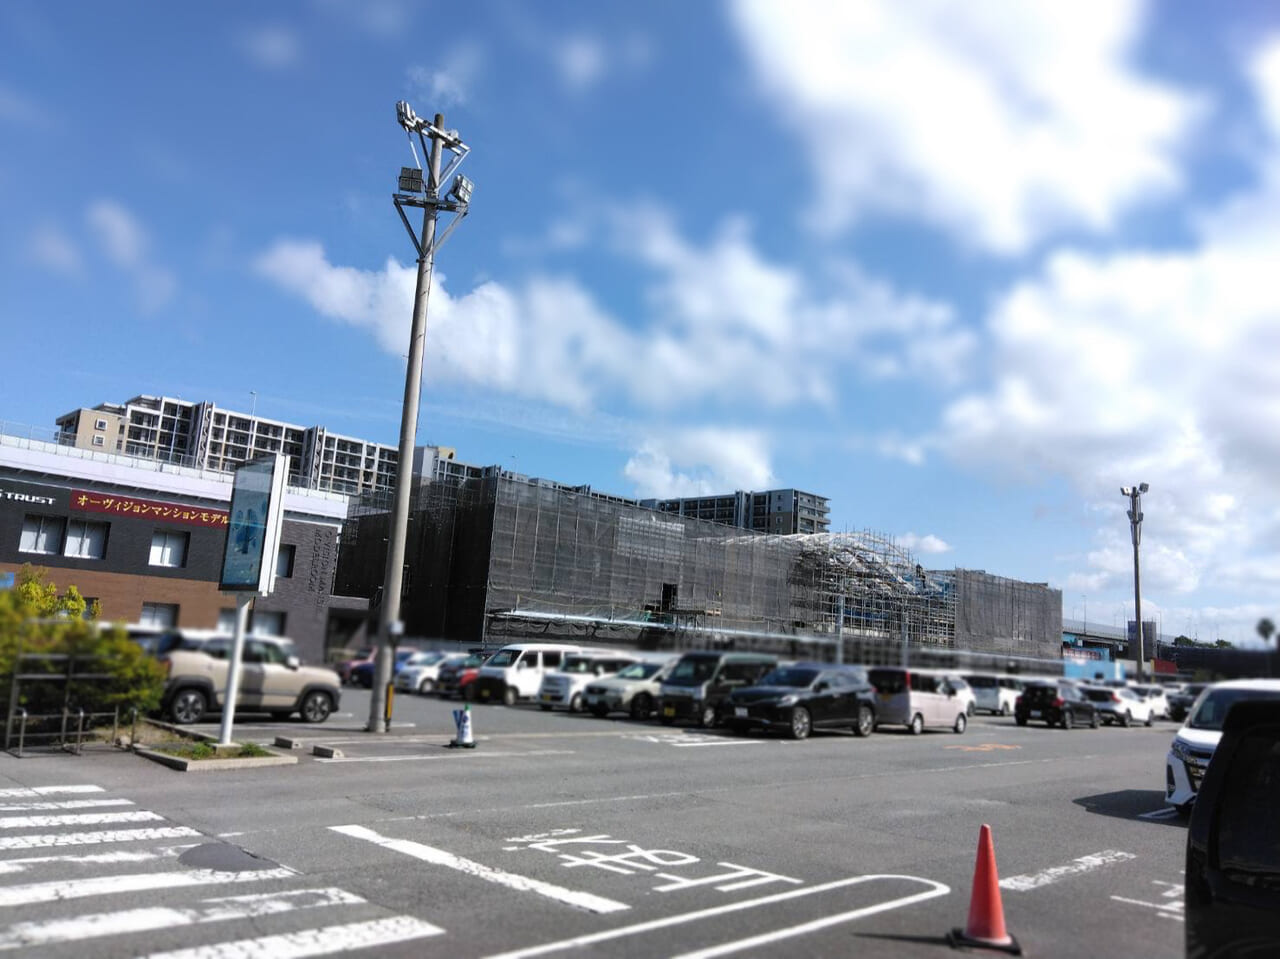 2024年6月20日(木)10:00に、イオン九州の新たな商業施設・香椎の東西を結び未来へ繋ぐ新たな交流空間 「Kashii iina Terrace(香椎いーなテラス) 」がグランドオープン予定です。